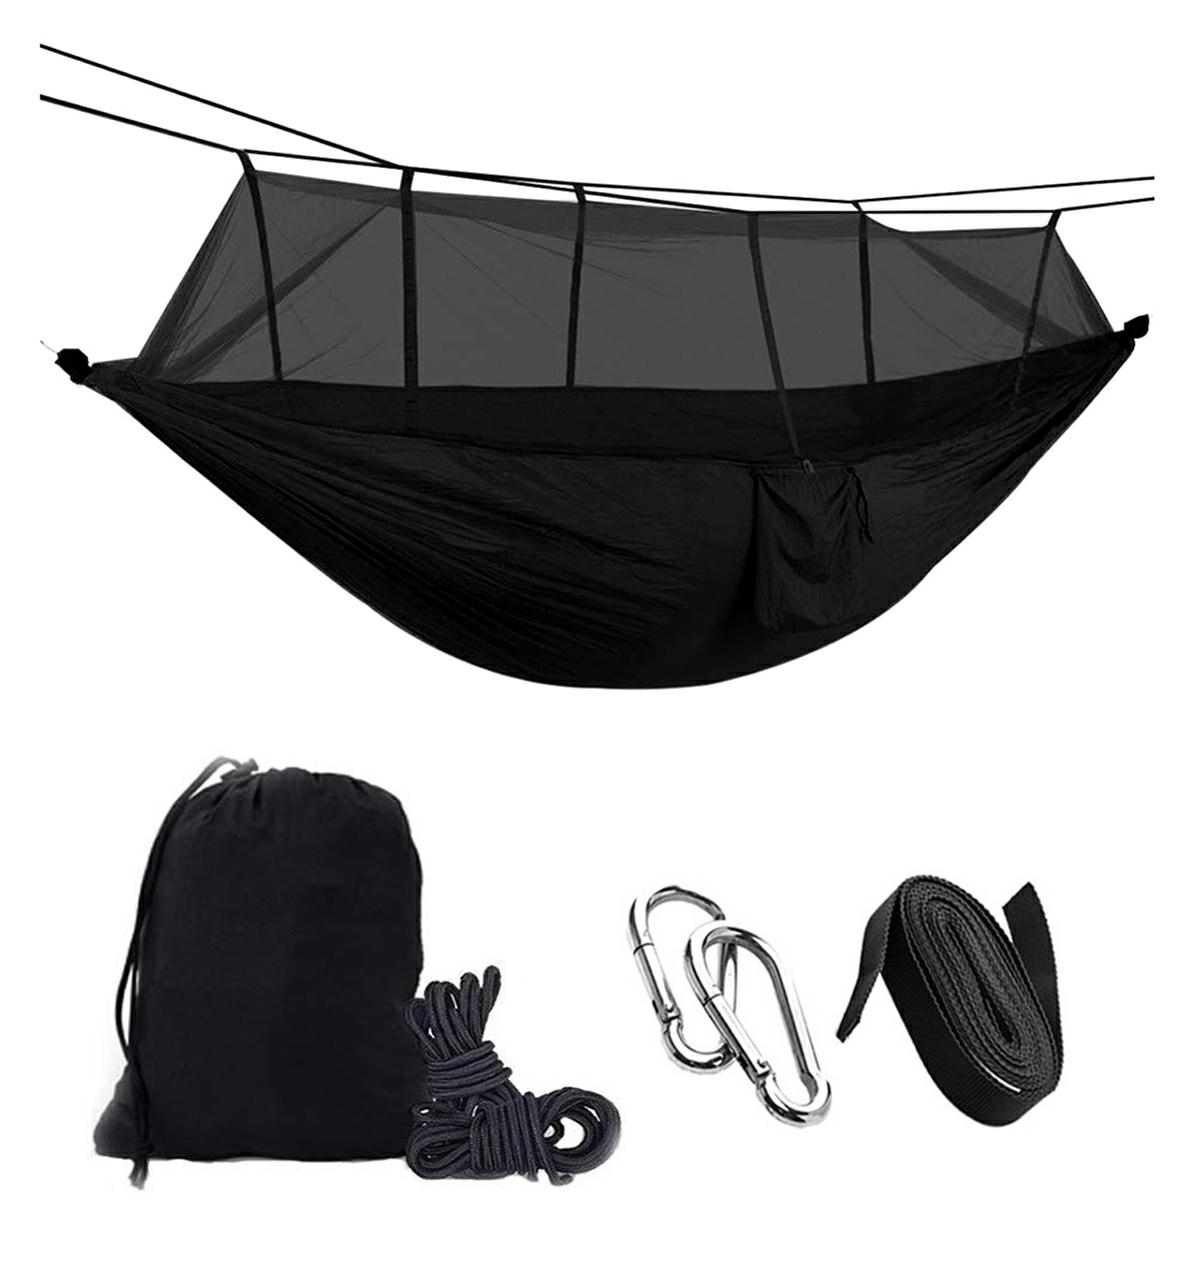 Turistisk hängmatta av nylon med myggnät, svart färg, dimensioner 260 cm x 140 cm